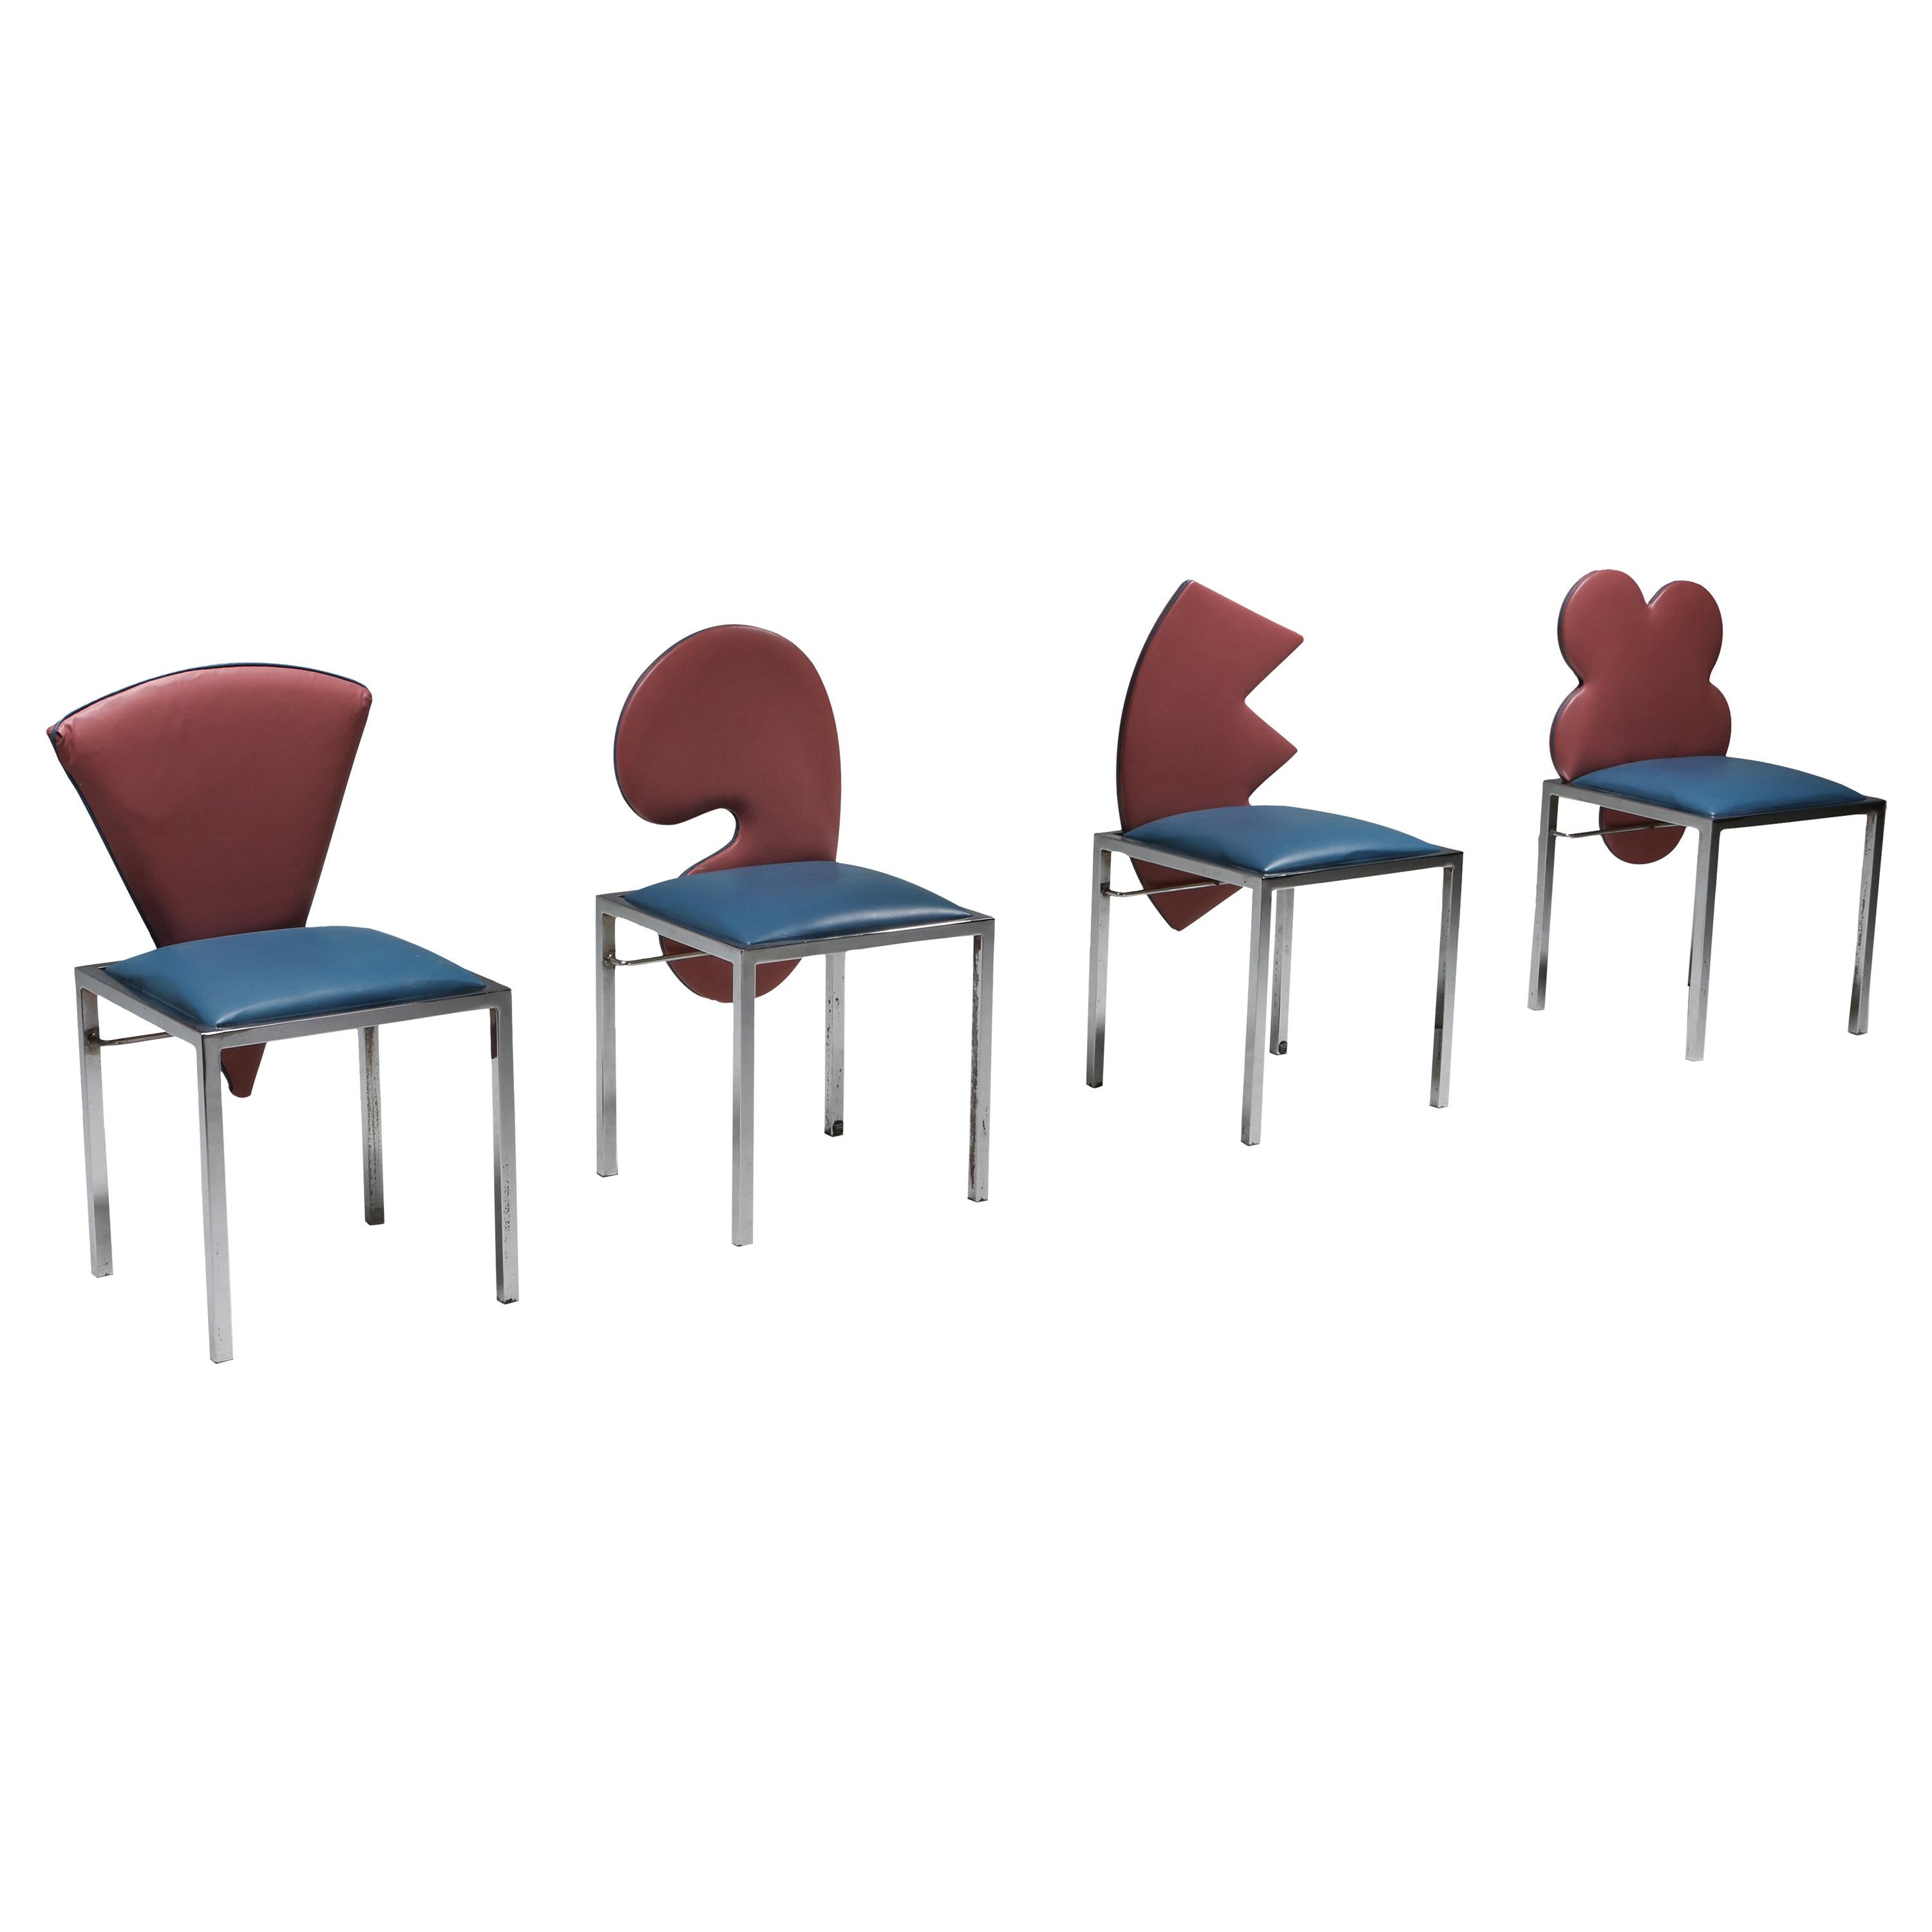 Saporiti set of four chairs Warhol, Malevich, Kandinsky, Fontana